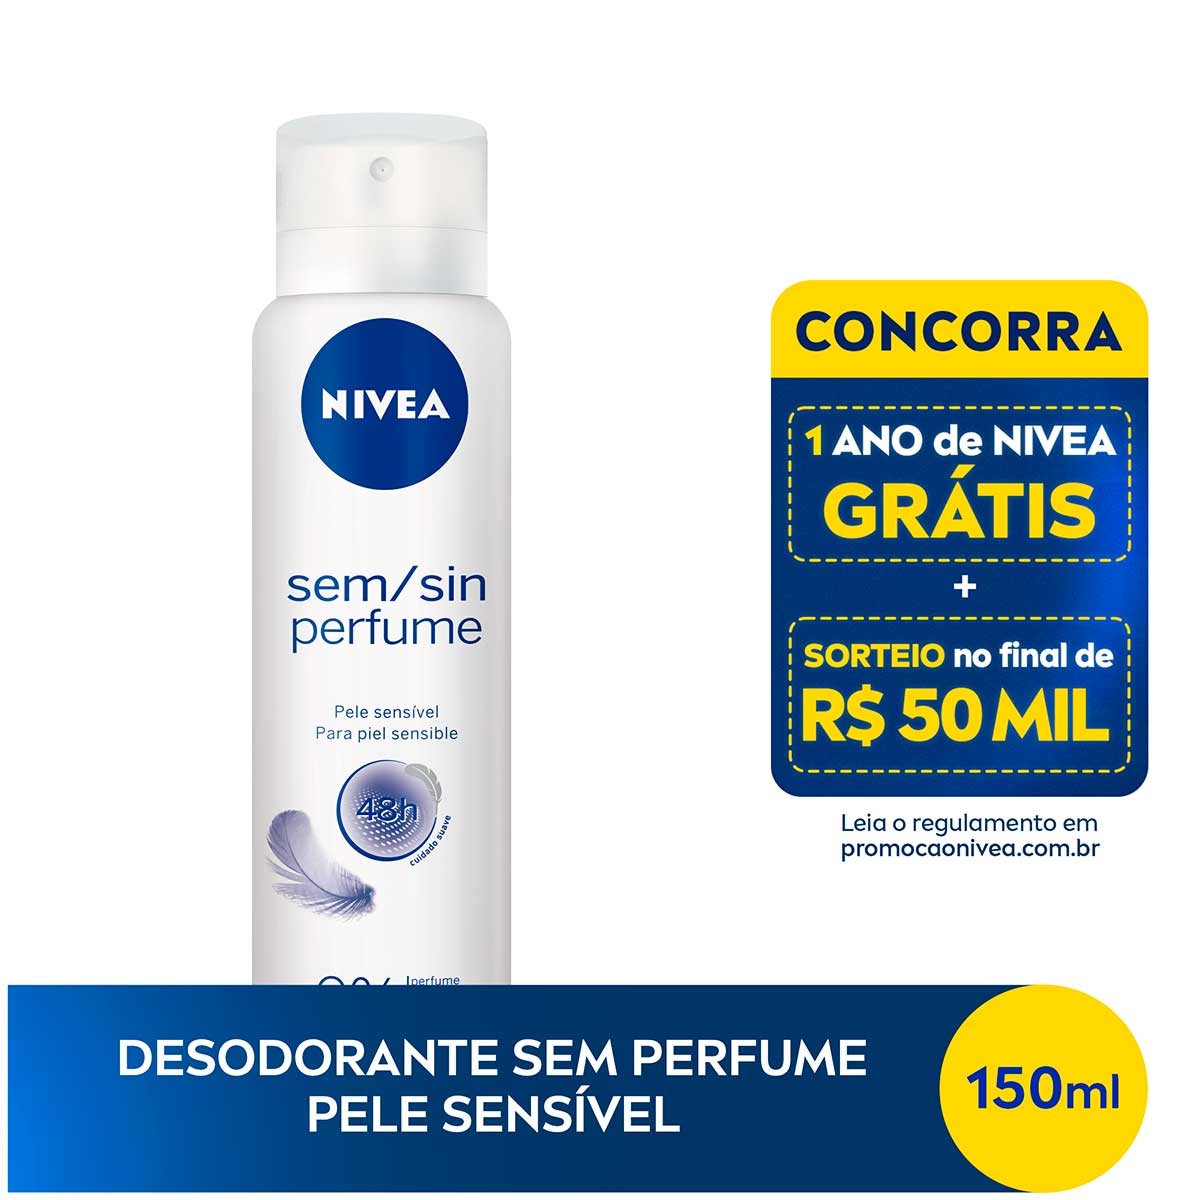 Desodorante Nivea Sem Perfume Pele Sensível Aerosol Antitraspirante com 150ml 150ml